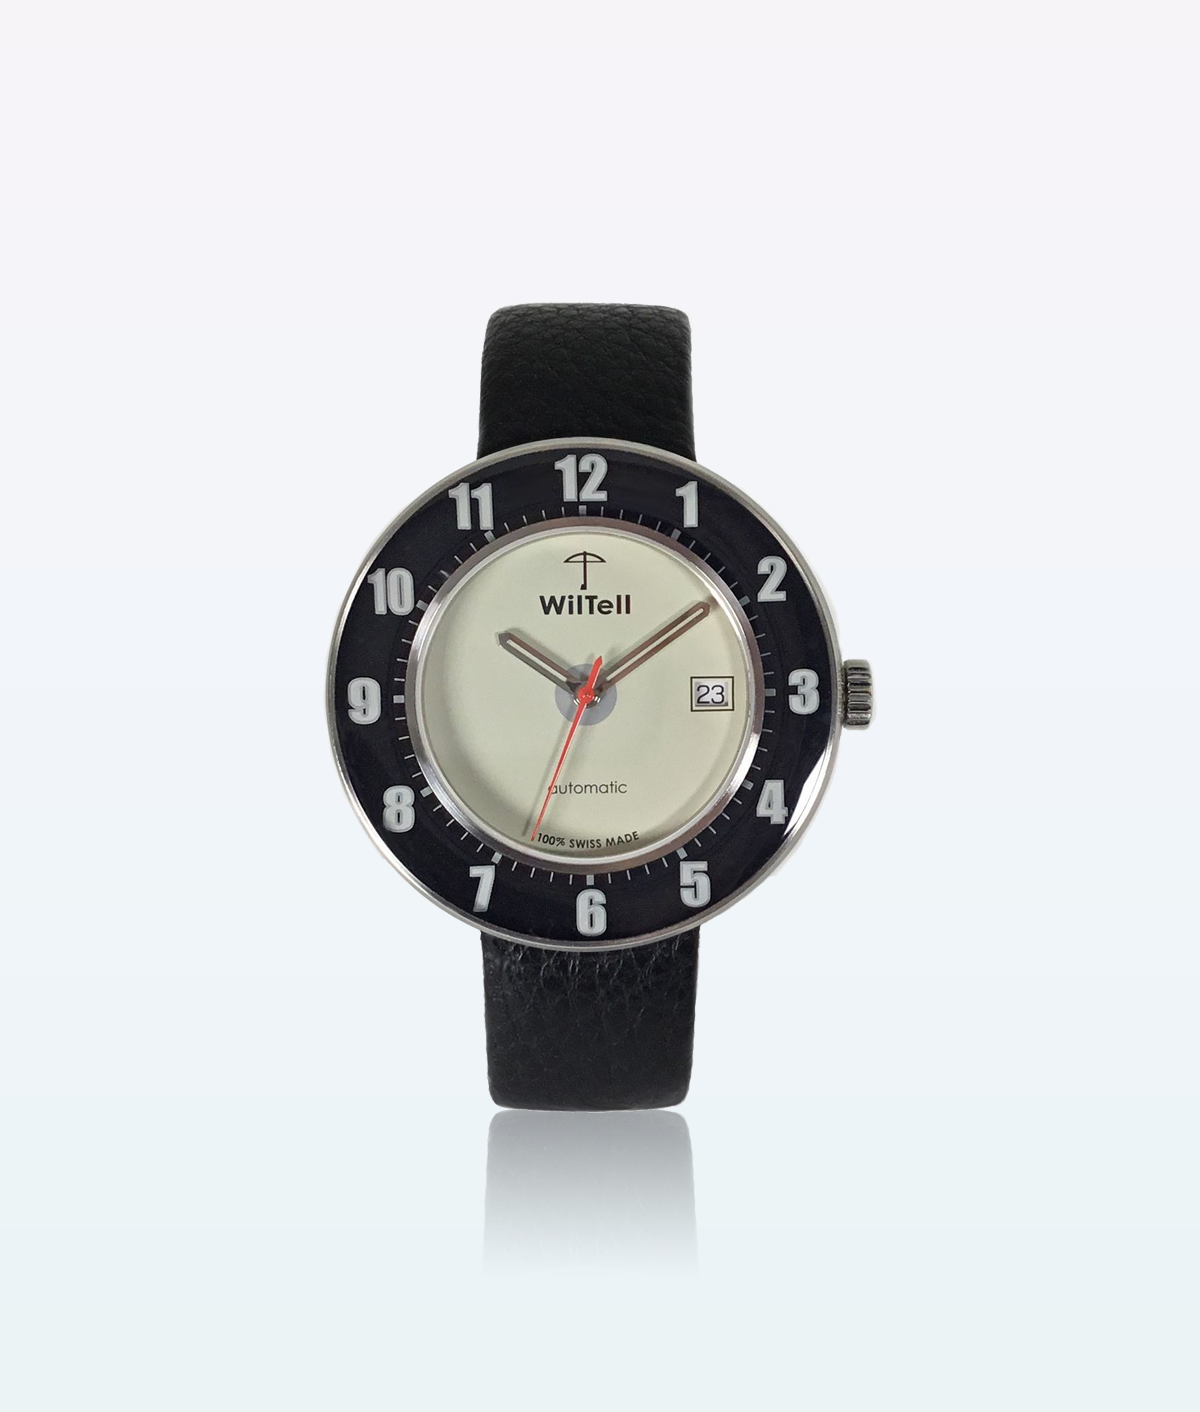 WilTell 100 Swiss Wrist Watch Black White